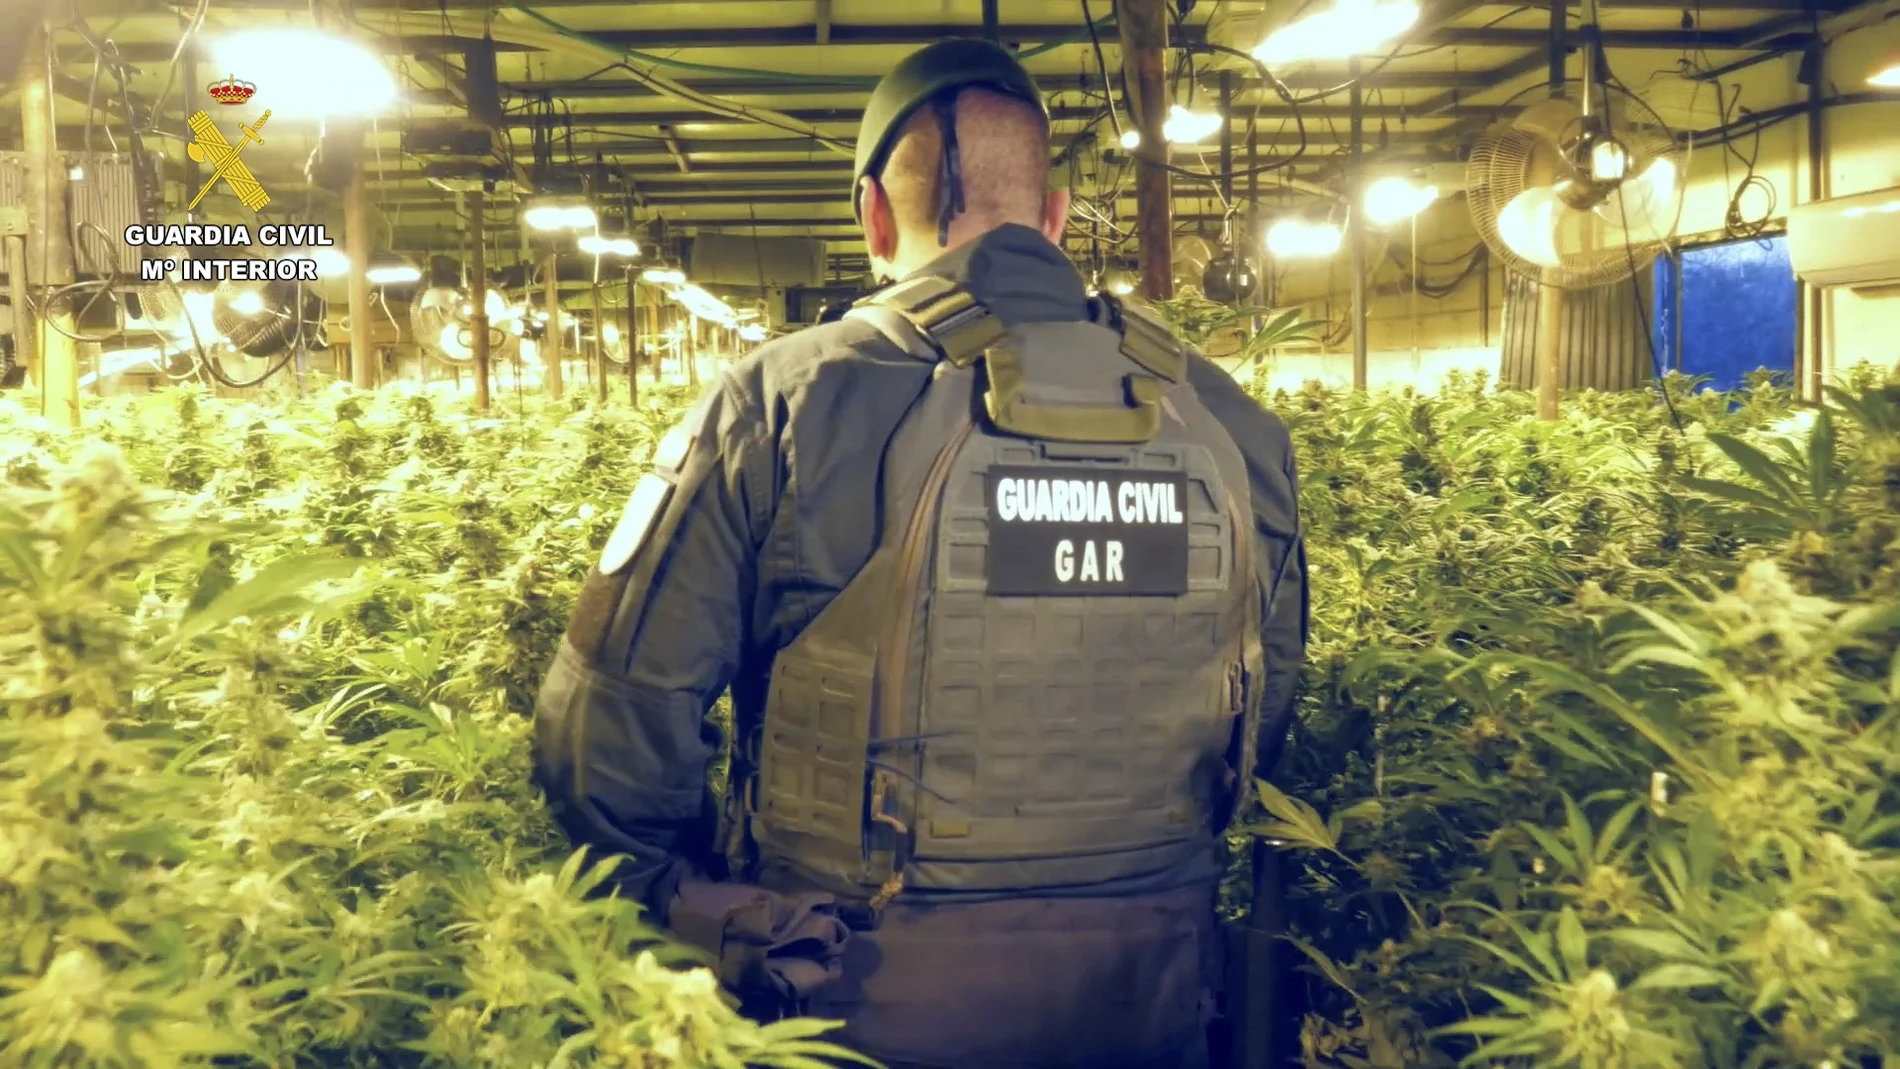 Plantación de marihuana descubierta por la Guardia Civil